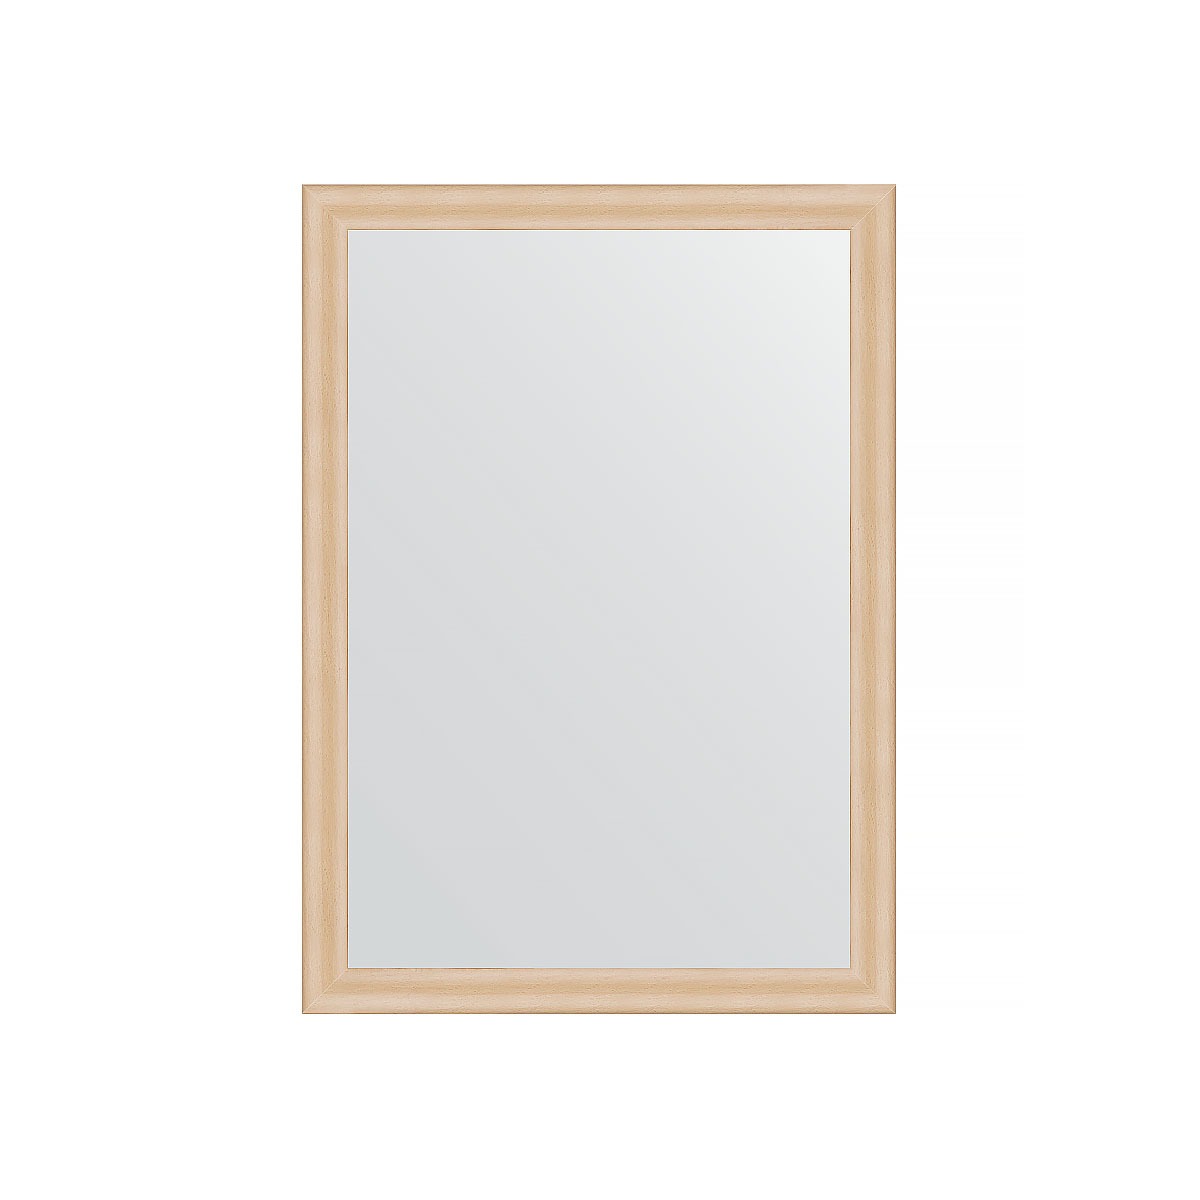 Зеркало в багетной раме Evoform бук 37 мм 50х70 см зеркало шкаф emmy милли 50х70 универсальный белый mel50unbel